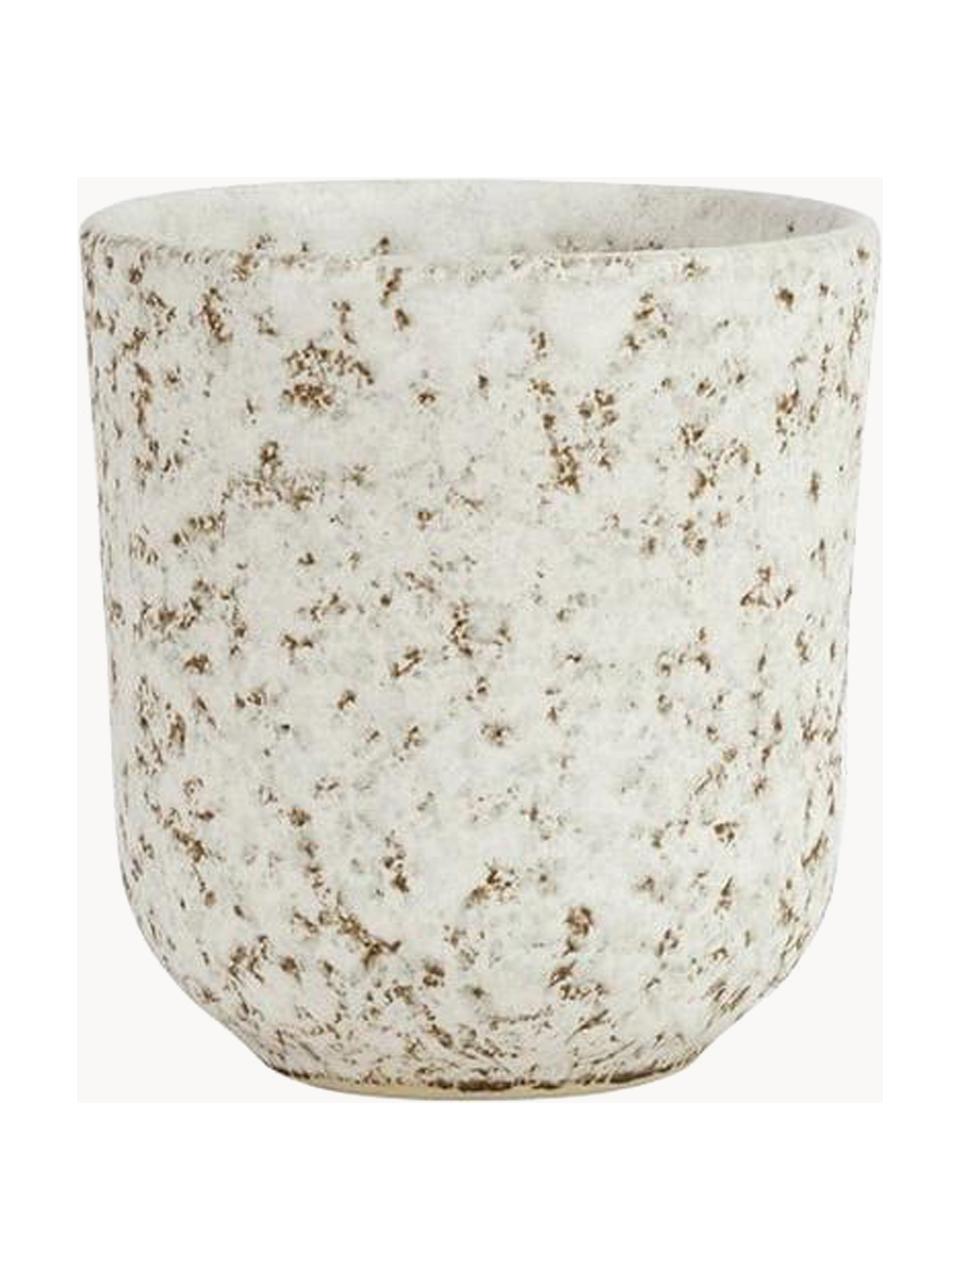 Hrnček s reaktívnou glazúrou Salt, 6 ks, Glazúrovaná kamenina, Lomená biela, hnedá, Ø 8 x V 9 cm, 230 ml